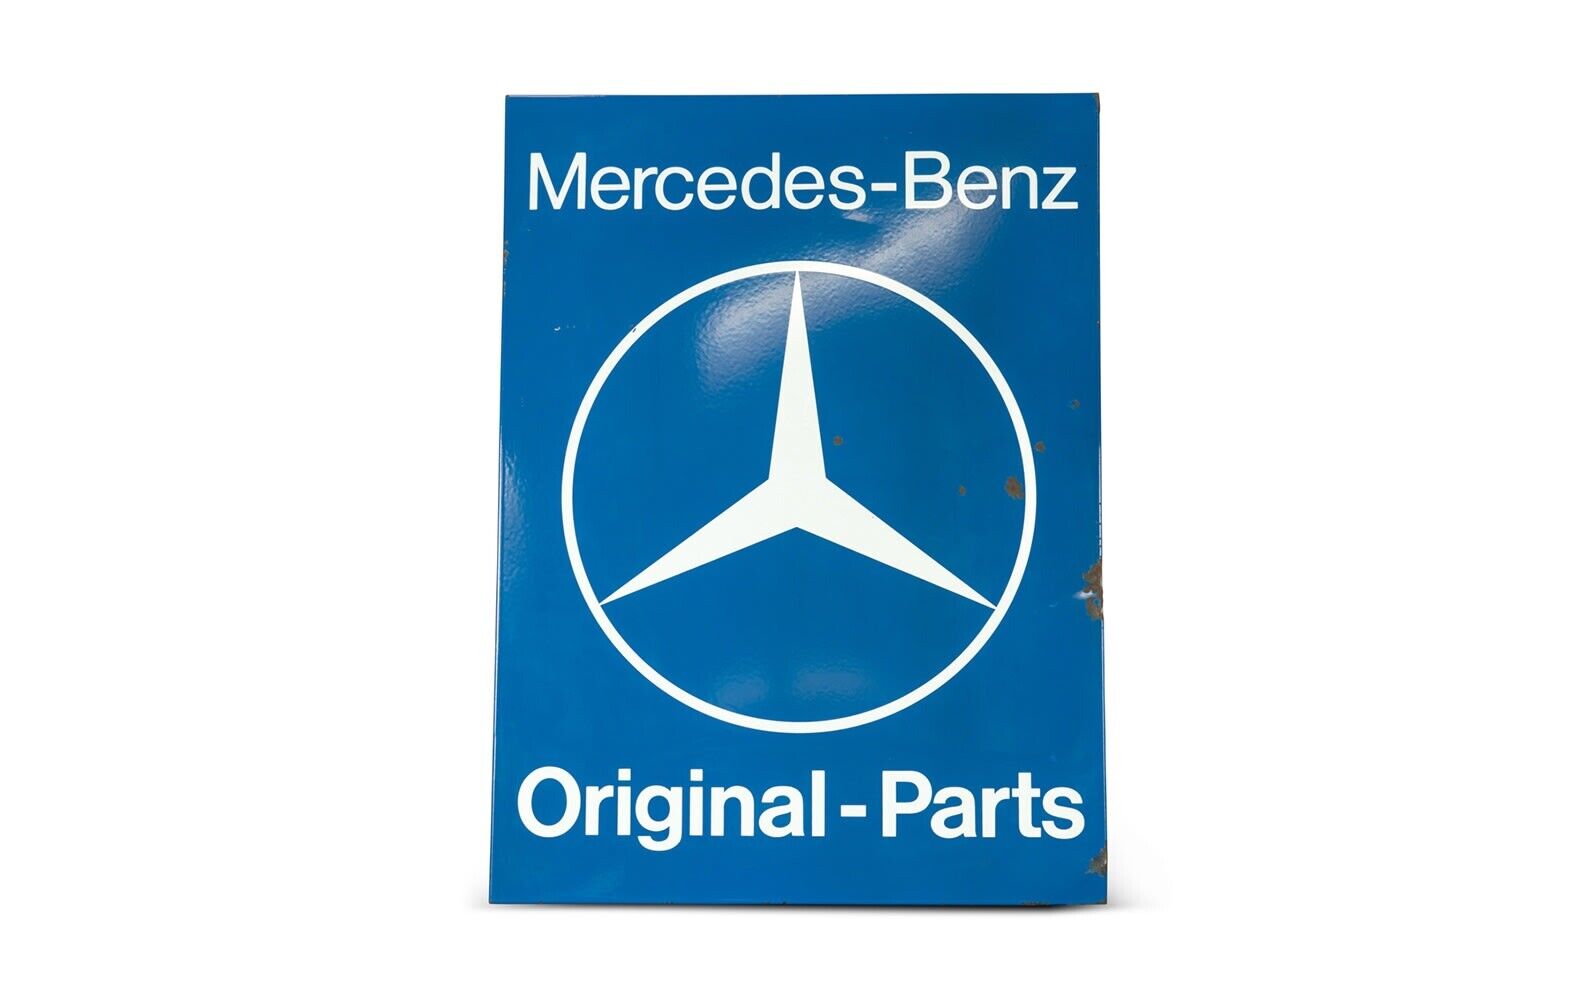 Original Mercedes Benz Original-Parts Sign